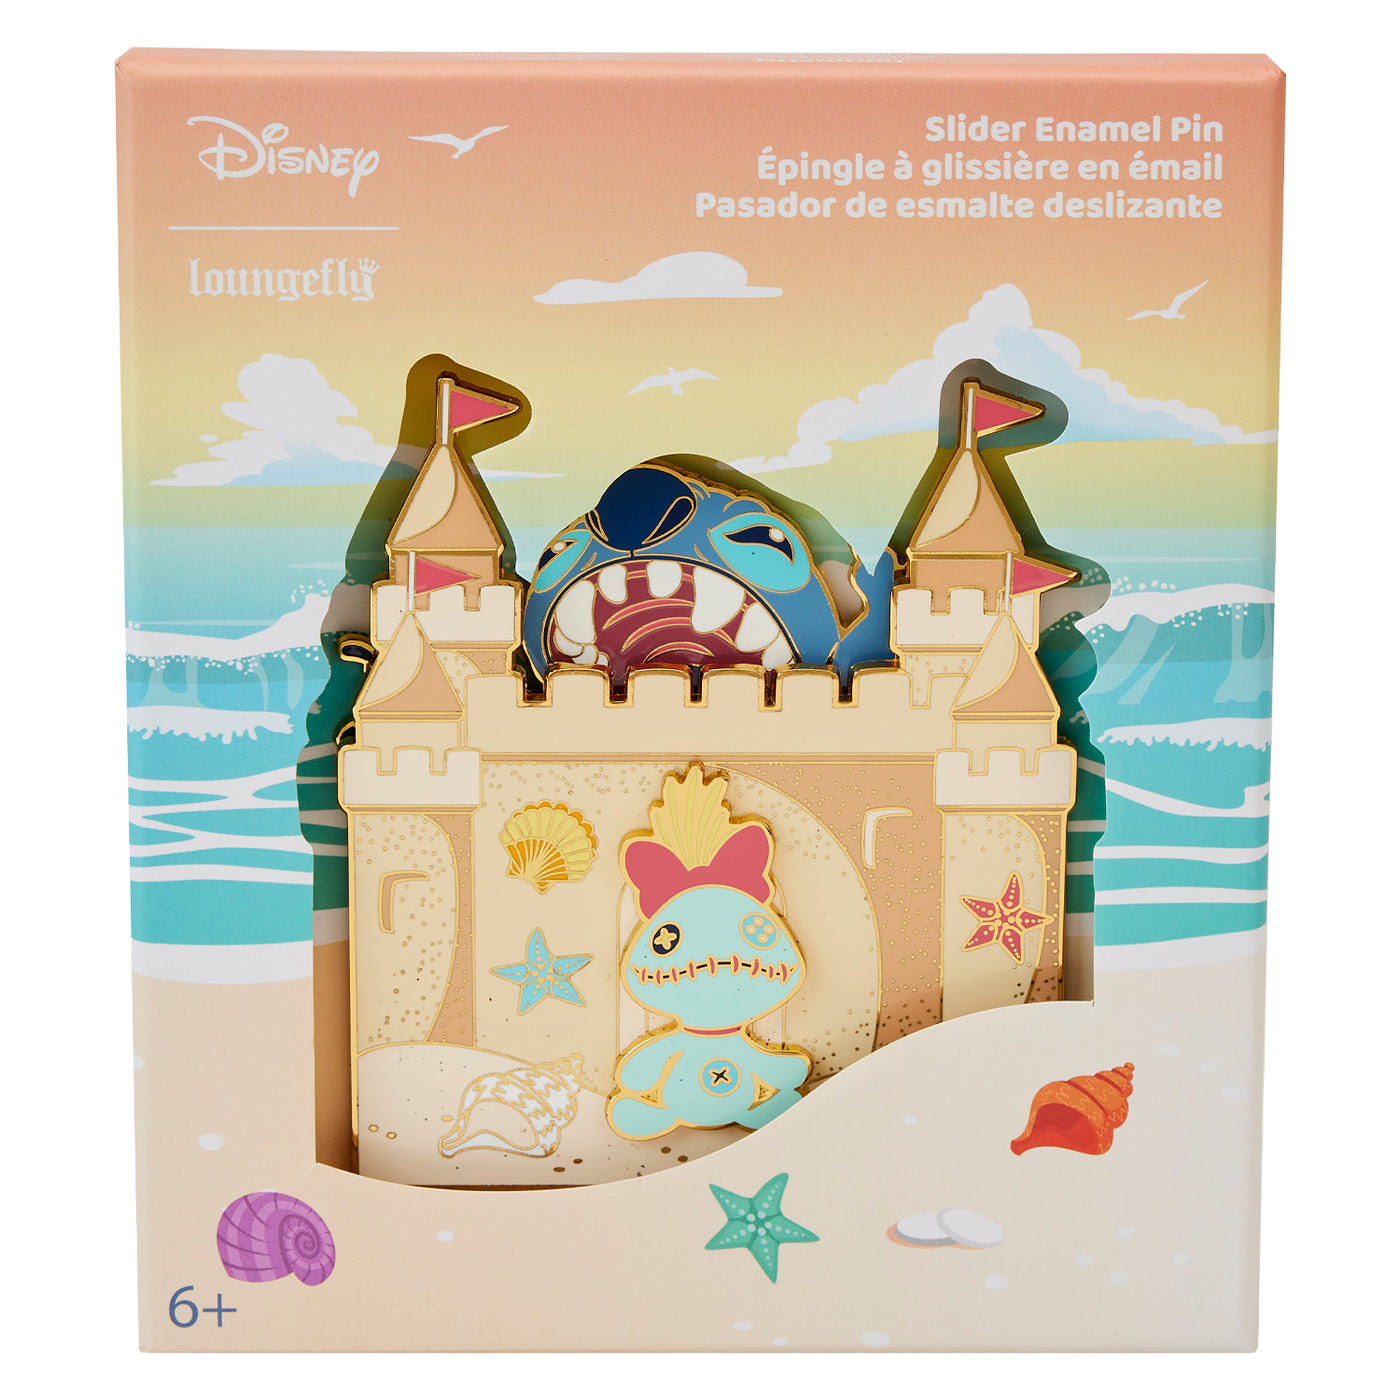 Disney Lilo & Stitch Sandcastle Beach Surprise 3" Collector Box Limited Edition Pin